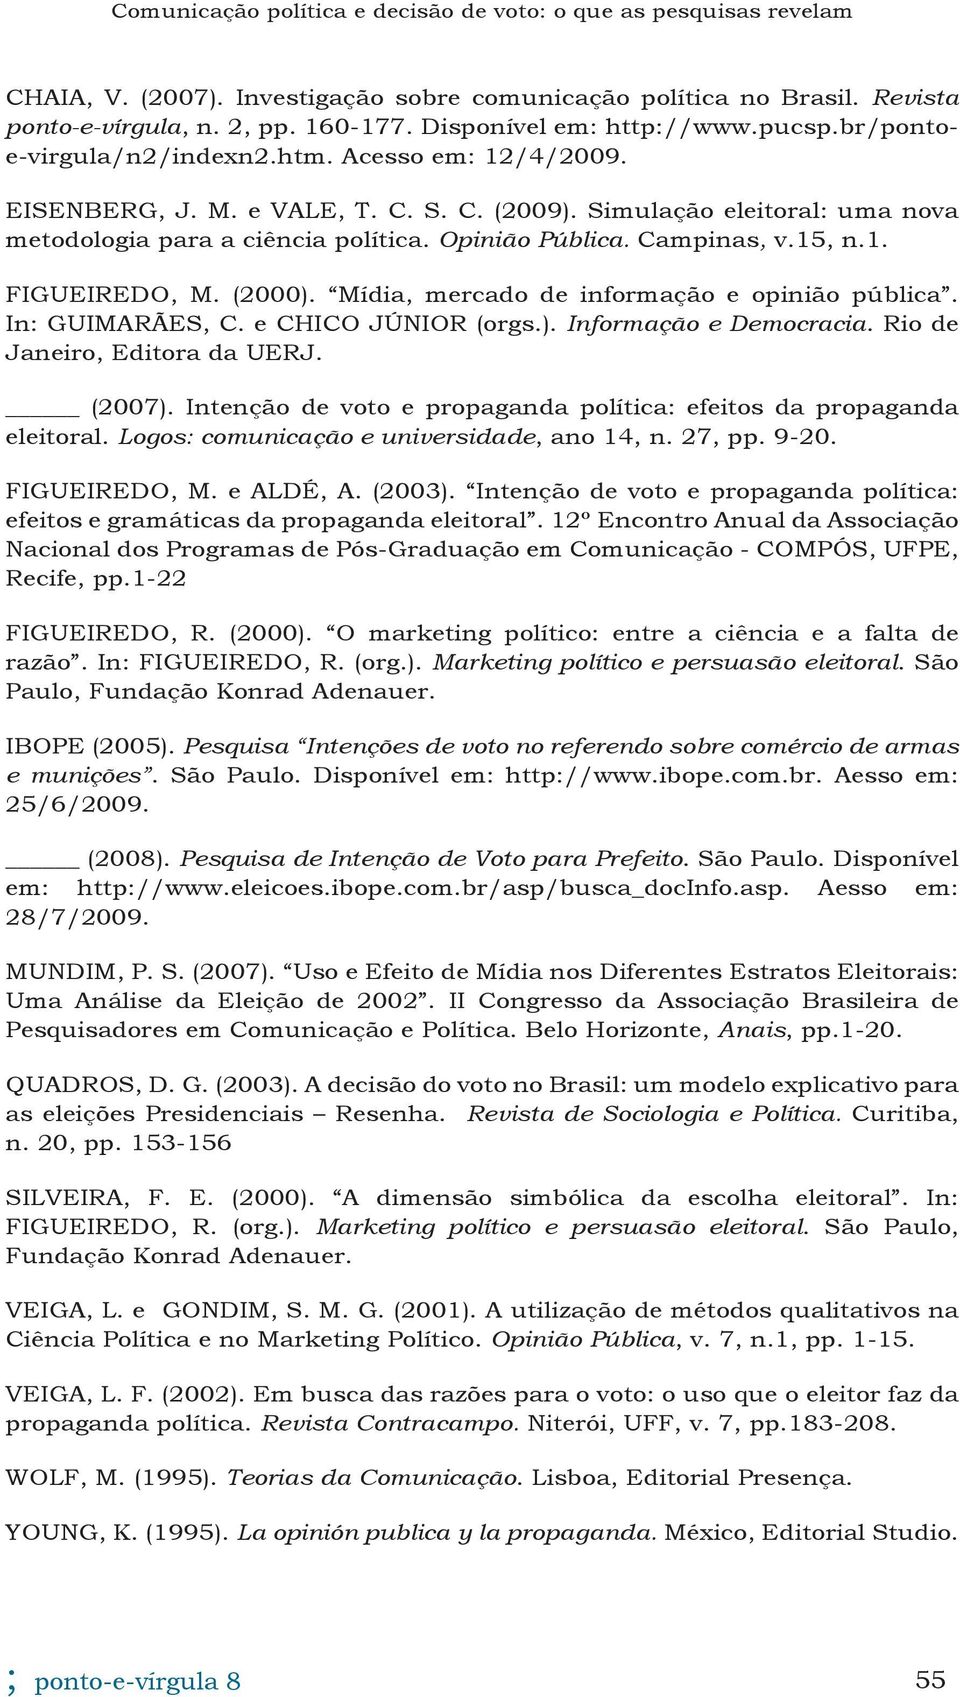 Mídia, mercado de informação e opinião pública. In: GUIMARÃES, C. e CHICO JÚNIOR (orgs.). Informação e Democracia. Rio de Janeiro, Editora da UERJ. (2007).